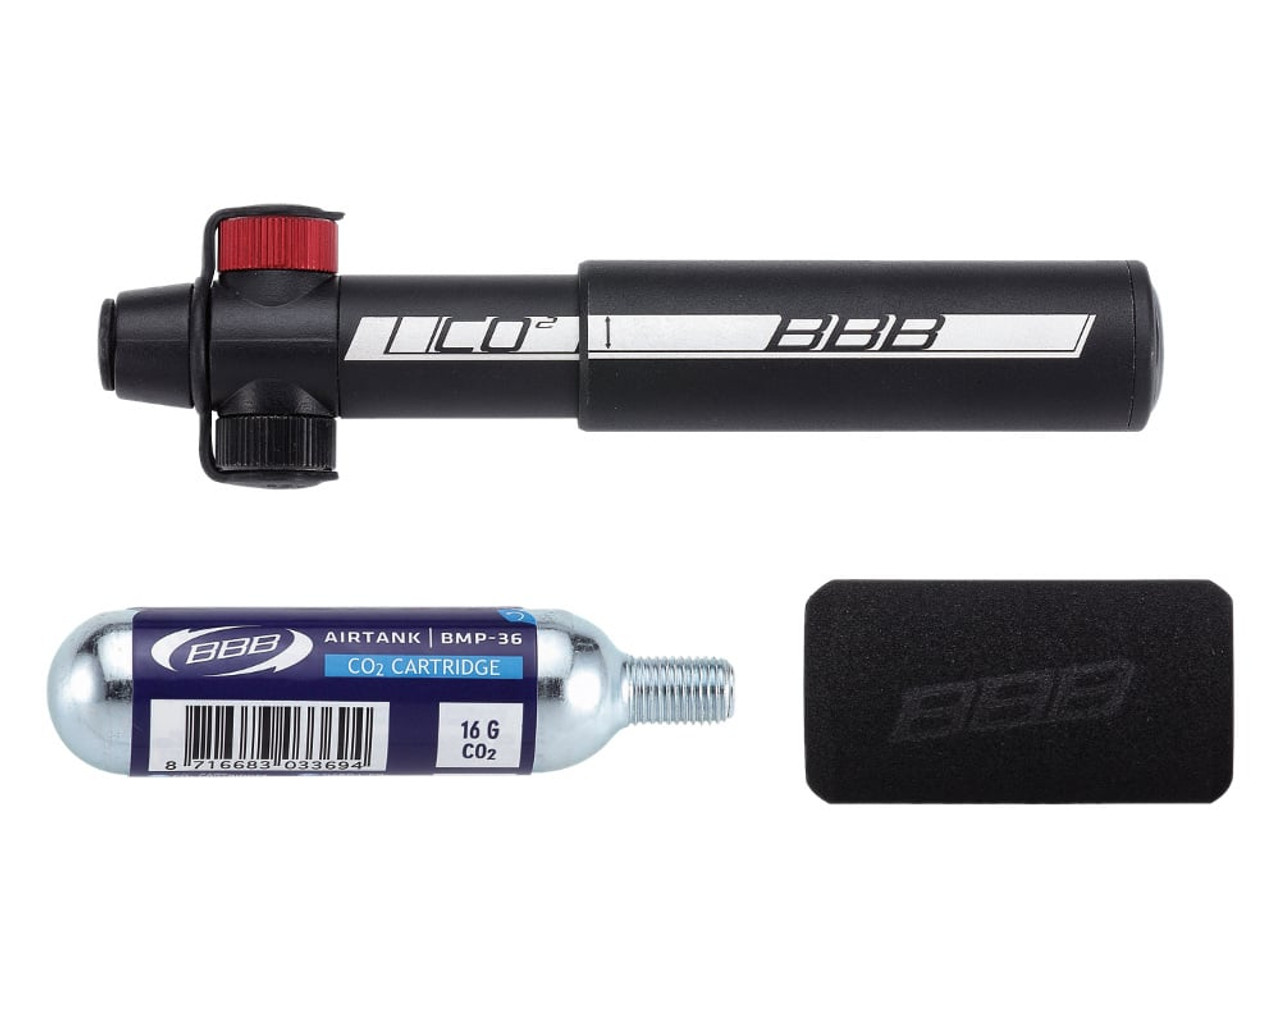 Co2 Blaster / Minipump - BBB Cycling